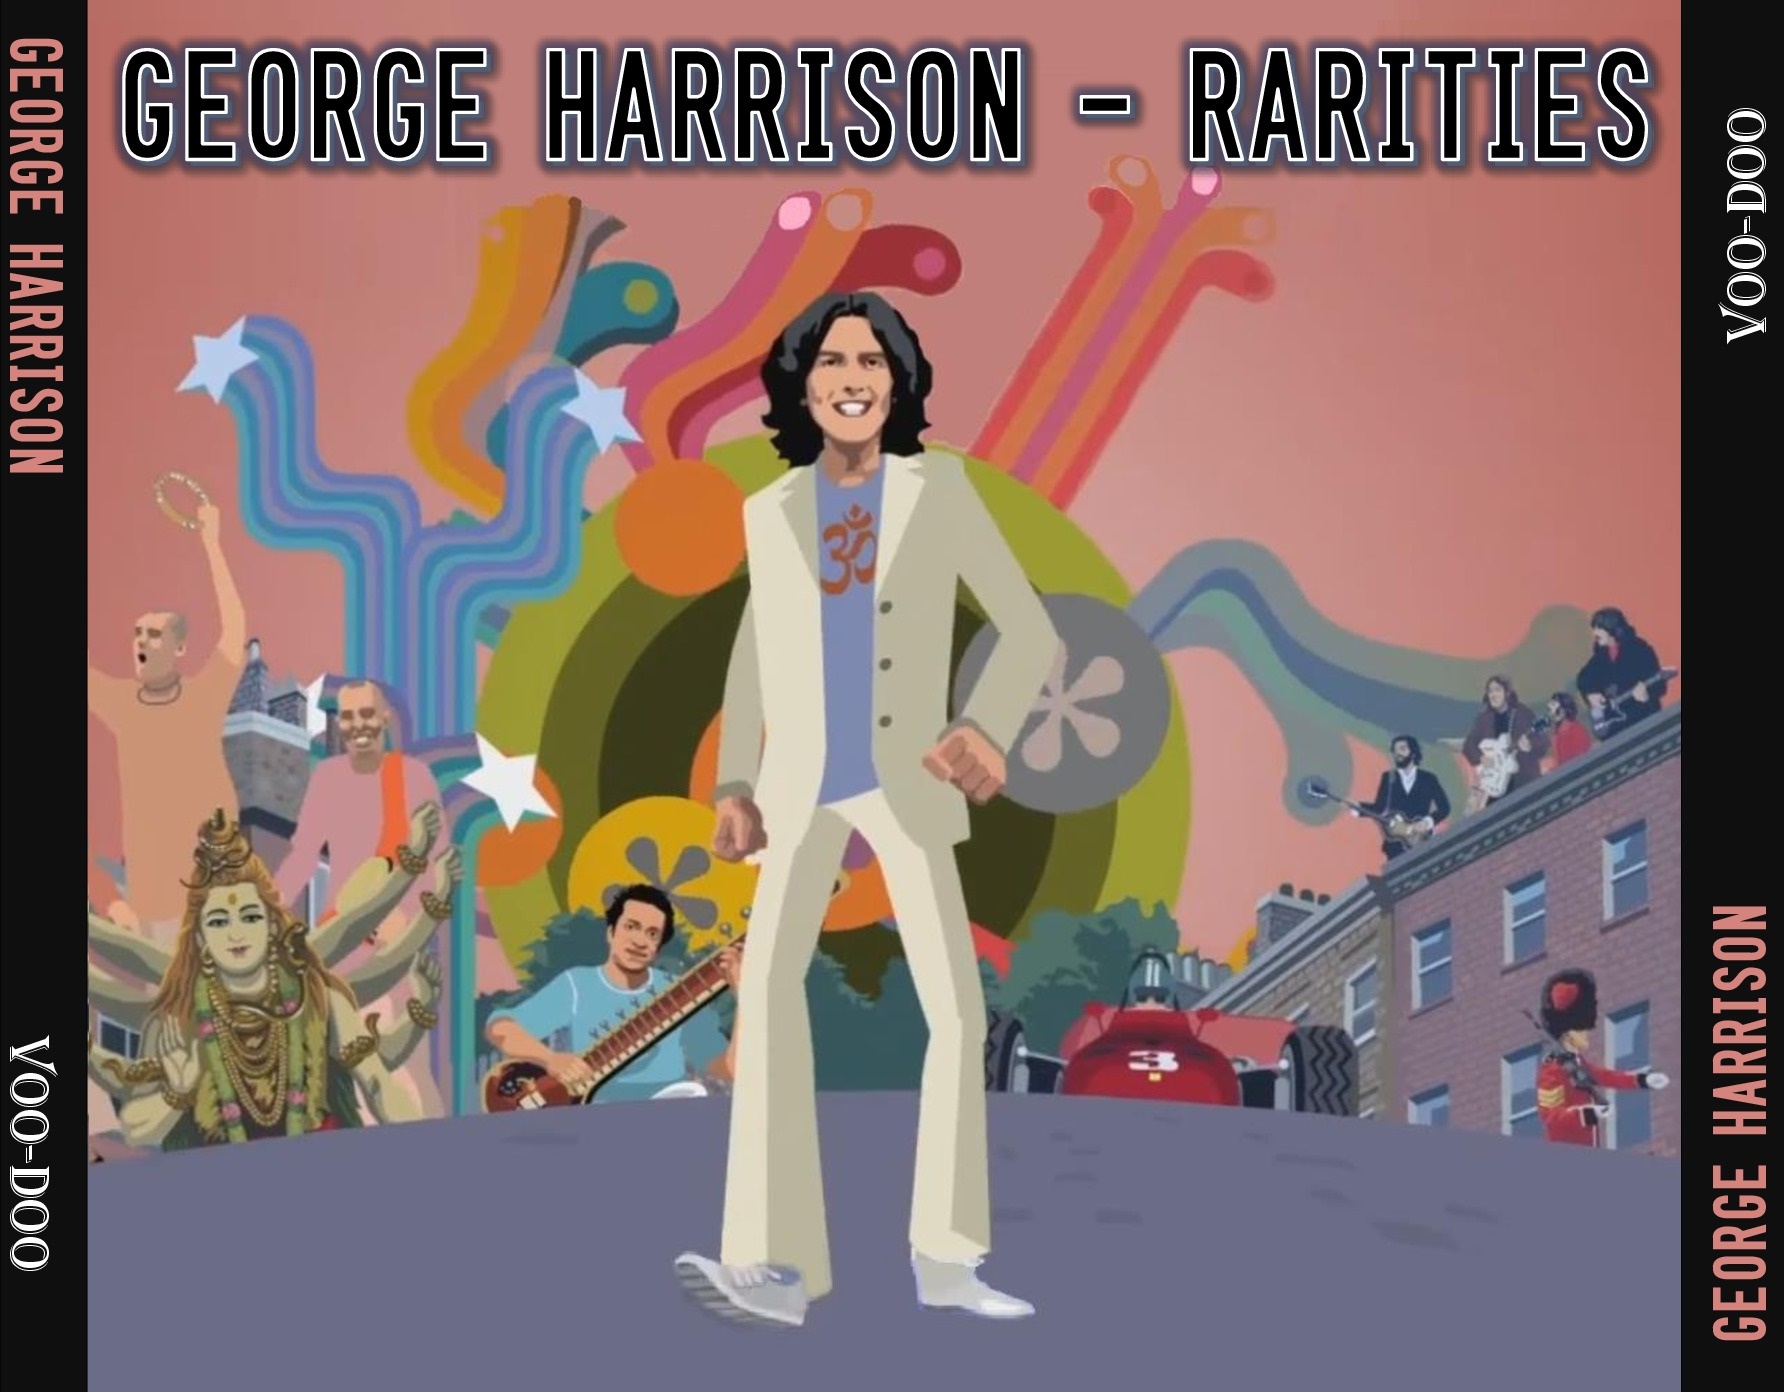 GeorgeHarrison-Rarities (7).jpg